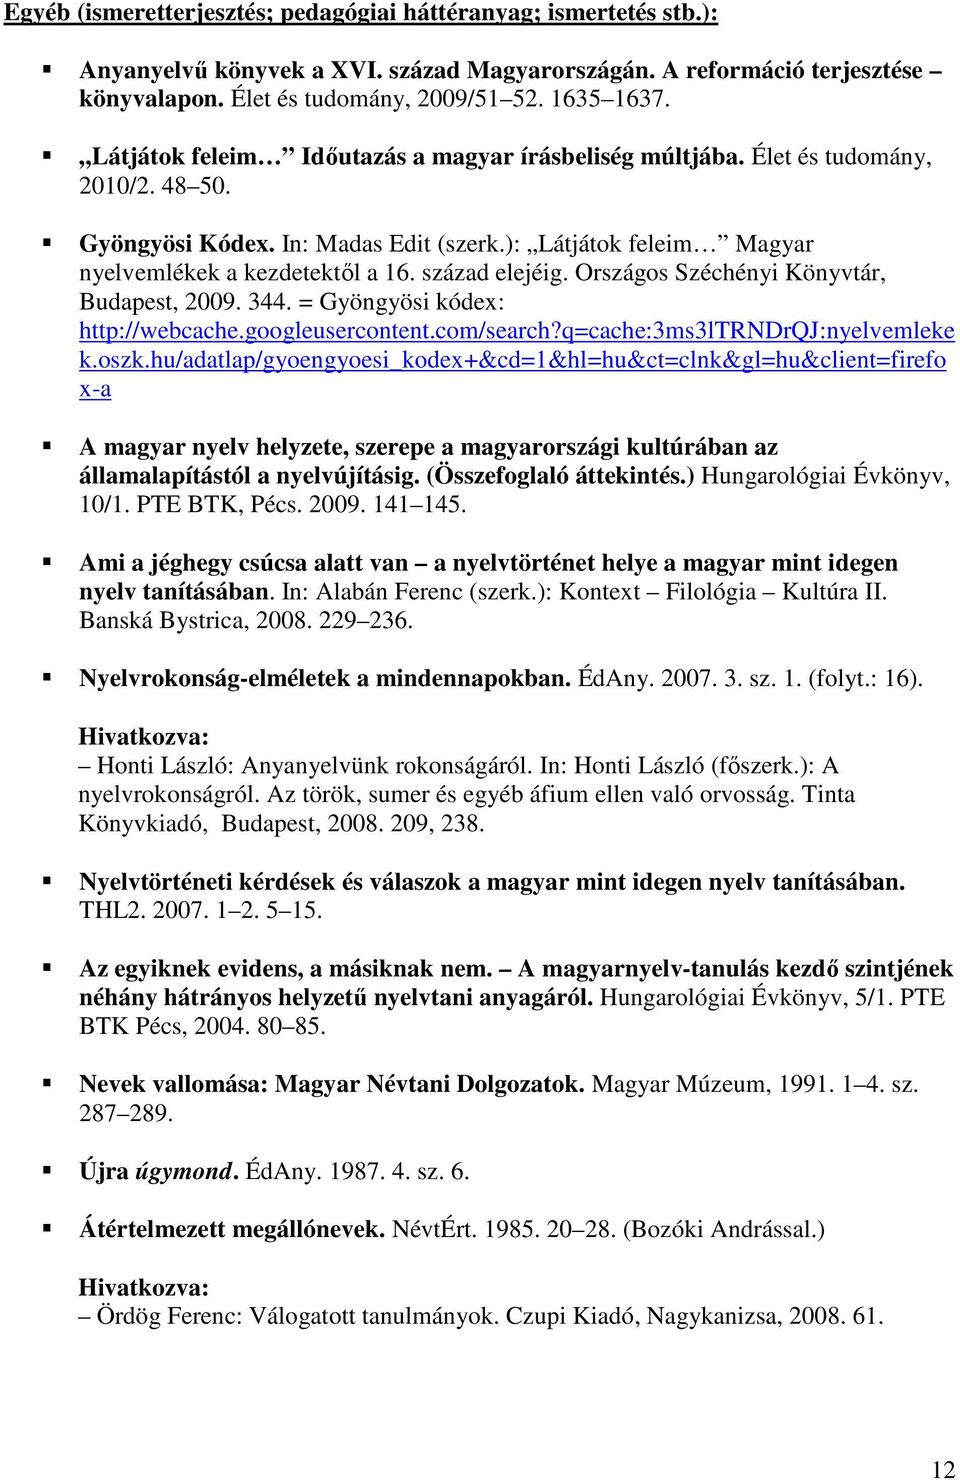 század elejéig. Országos Széchényi Könyvtár, Budapest, 2009. 344. = Gyöngyösi kódex: http://webcache.googleusercontent.com/search?q=cache:3ms3ltrndrqj:nyelvemleke k.oszk.